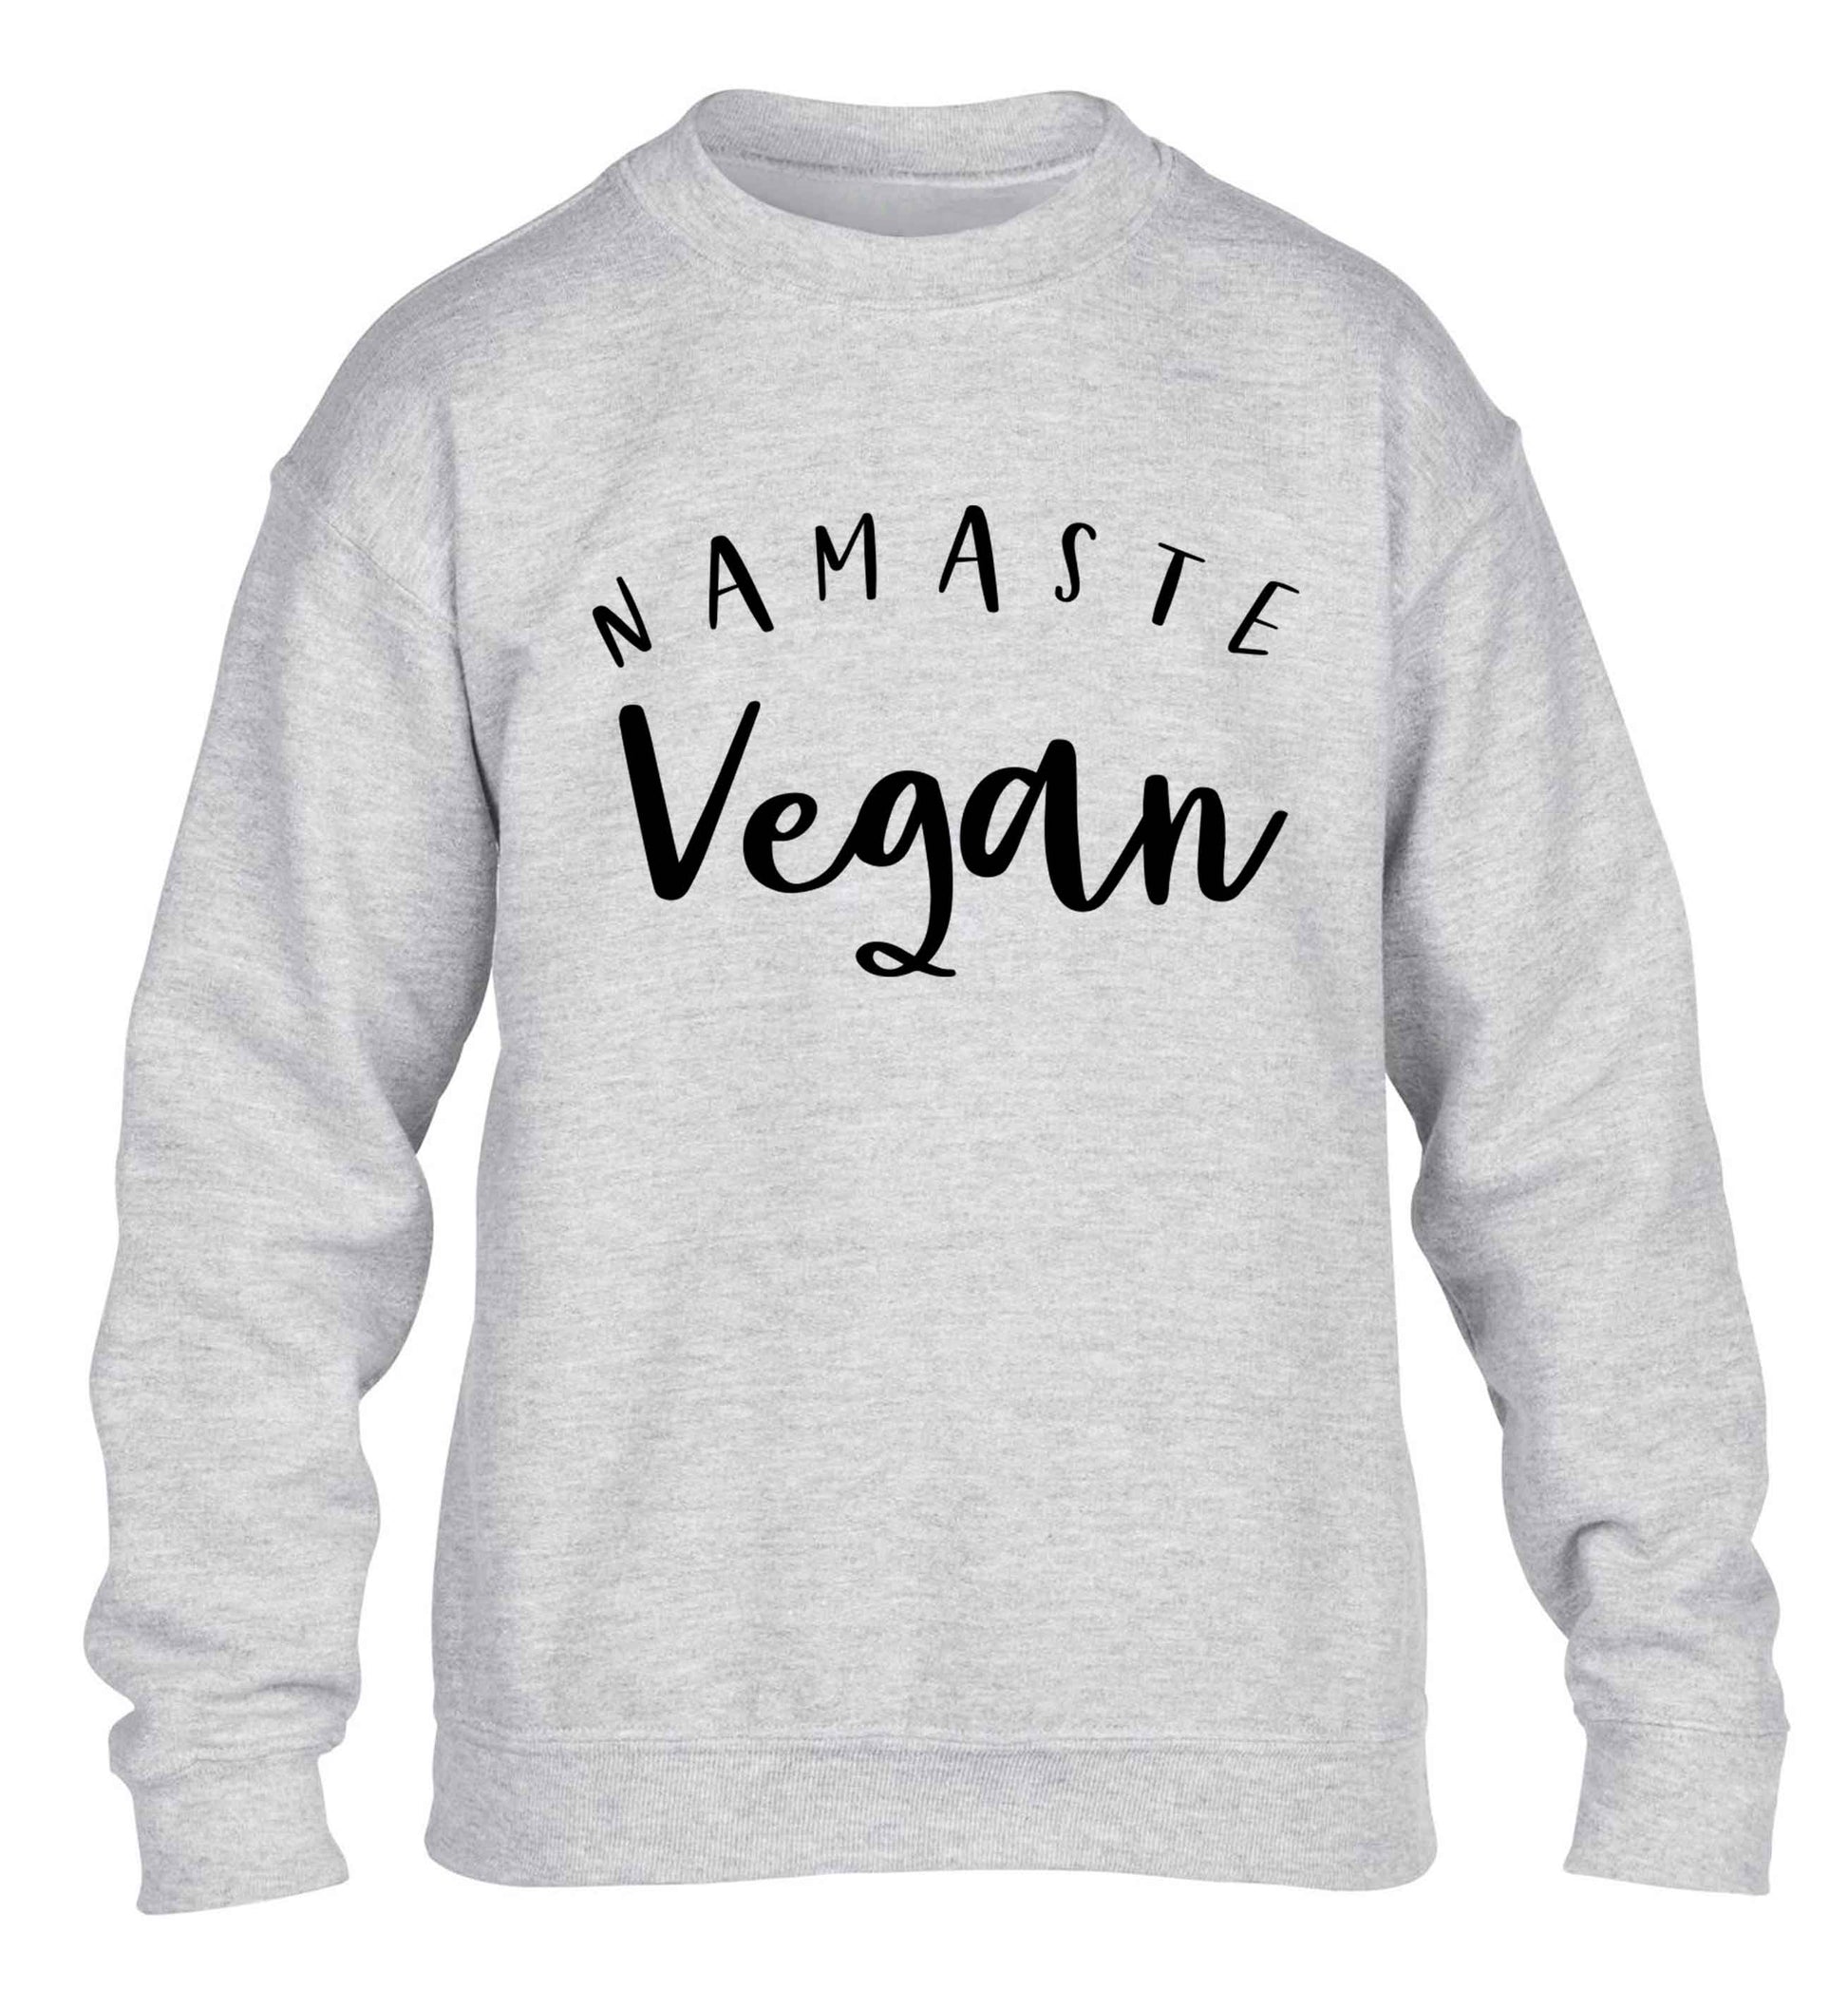 Namaste vegan children's grey sweater 12-13 Years